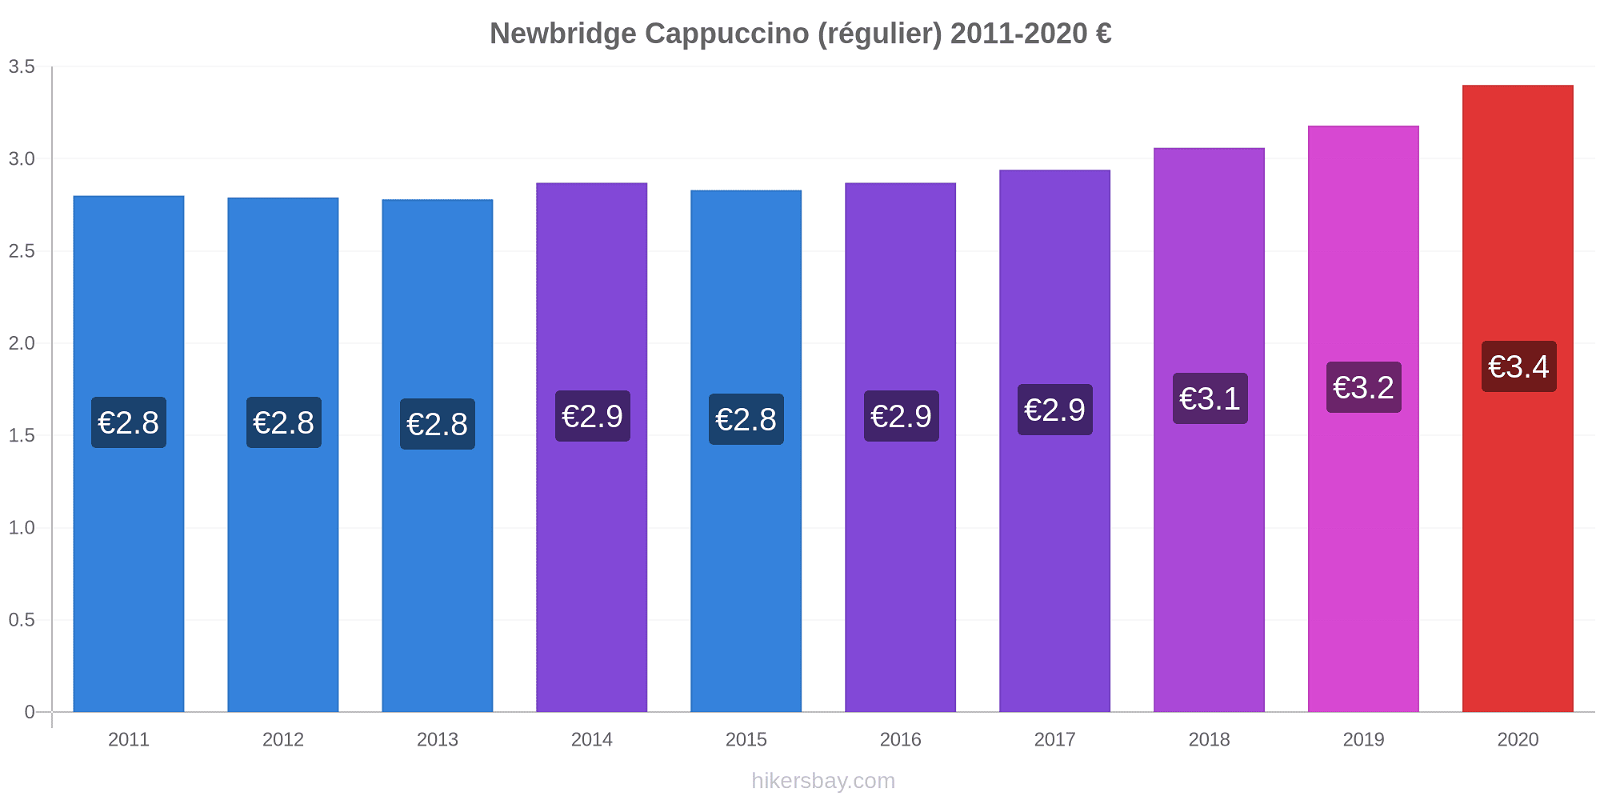 Newbridge changements de prix Cappuccino (régulier) hikersbay.com